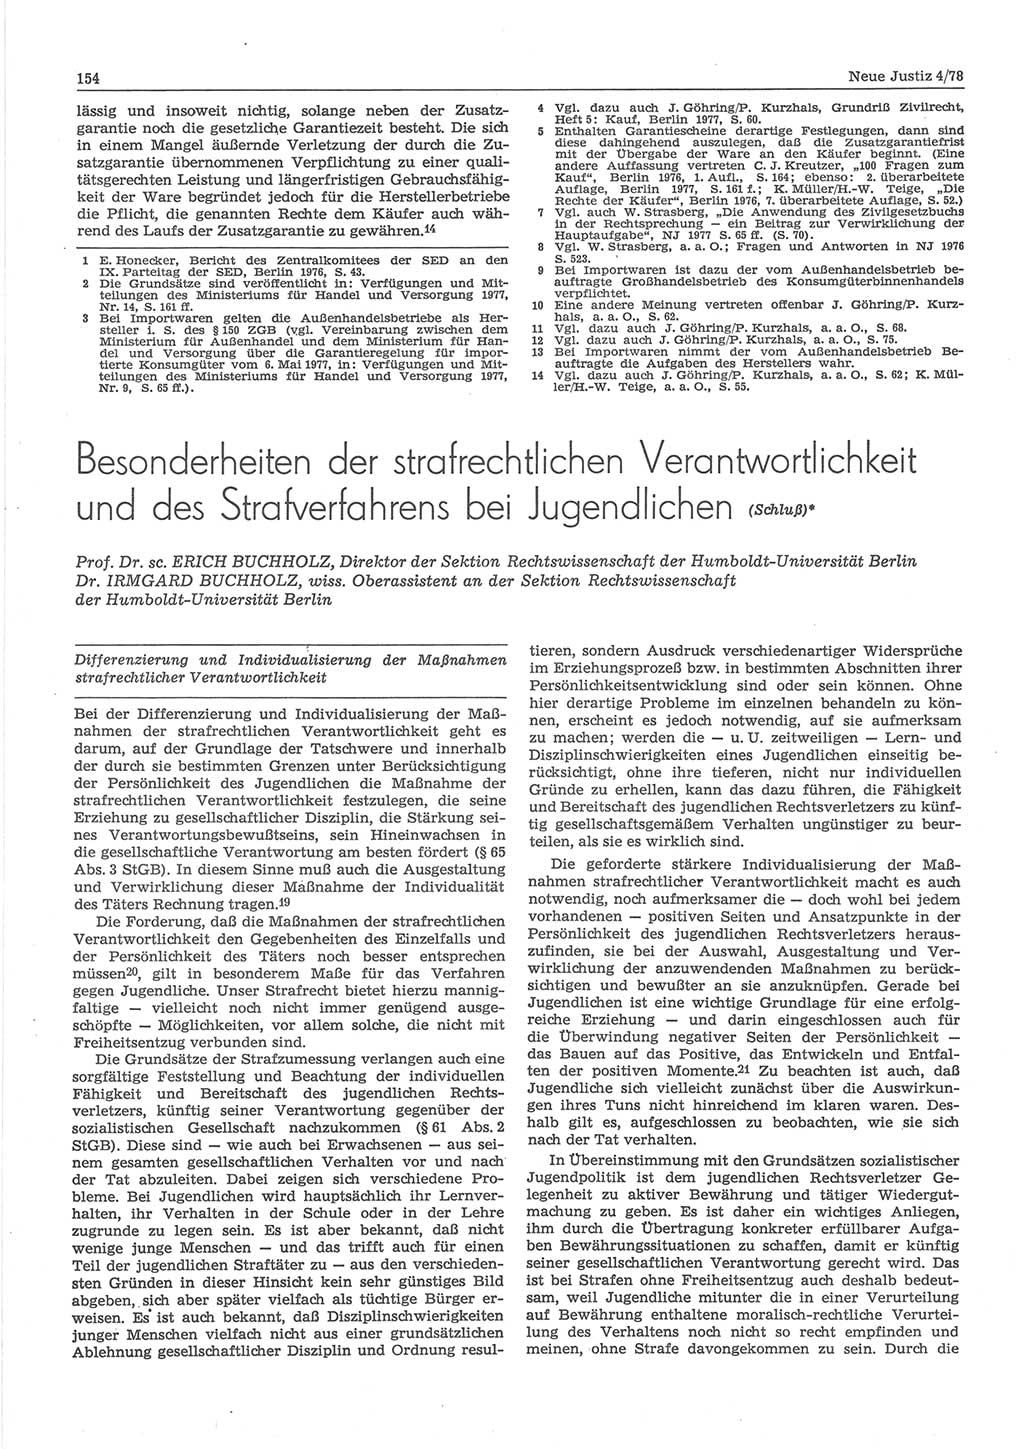 Neue Justiz (NJ), Zeitschrift für sozialistisches Recht und Gesetzlichkeit [Deutsche Demokratische Republik (DDR)], 32. Jahrgang 1978, Seite 154 (NJ DDR 1978, S. 154)